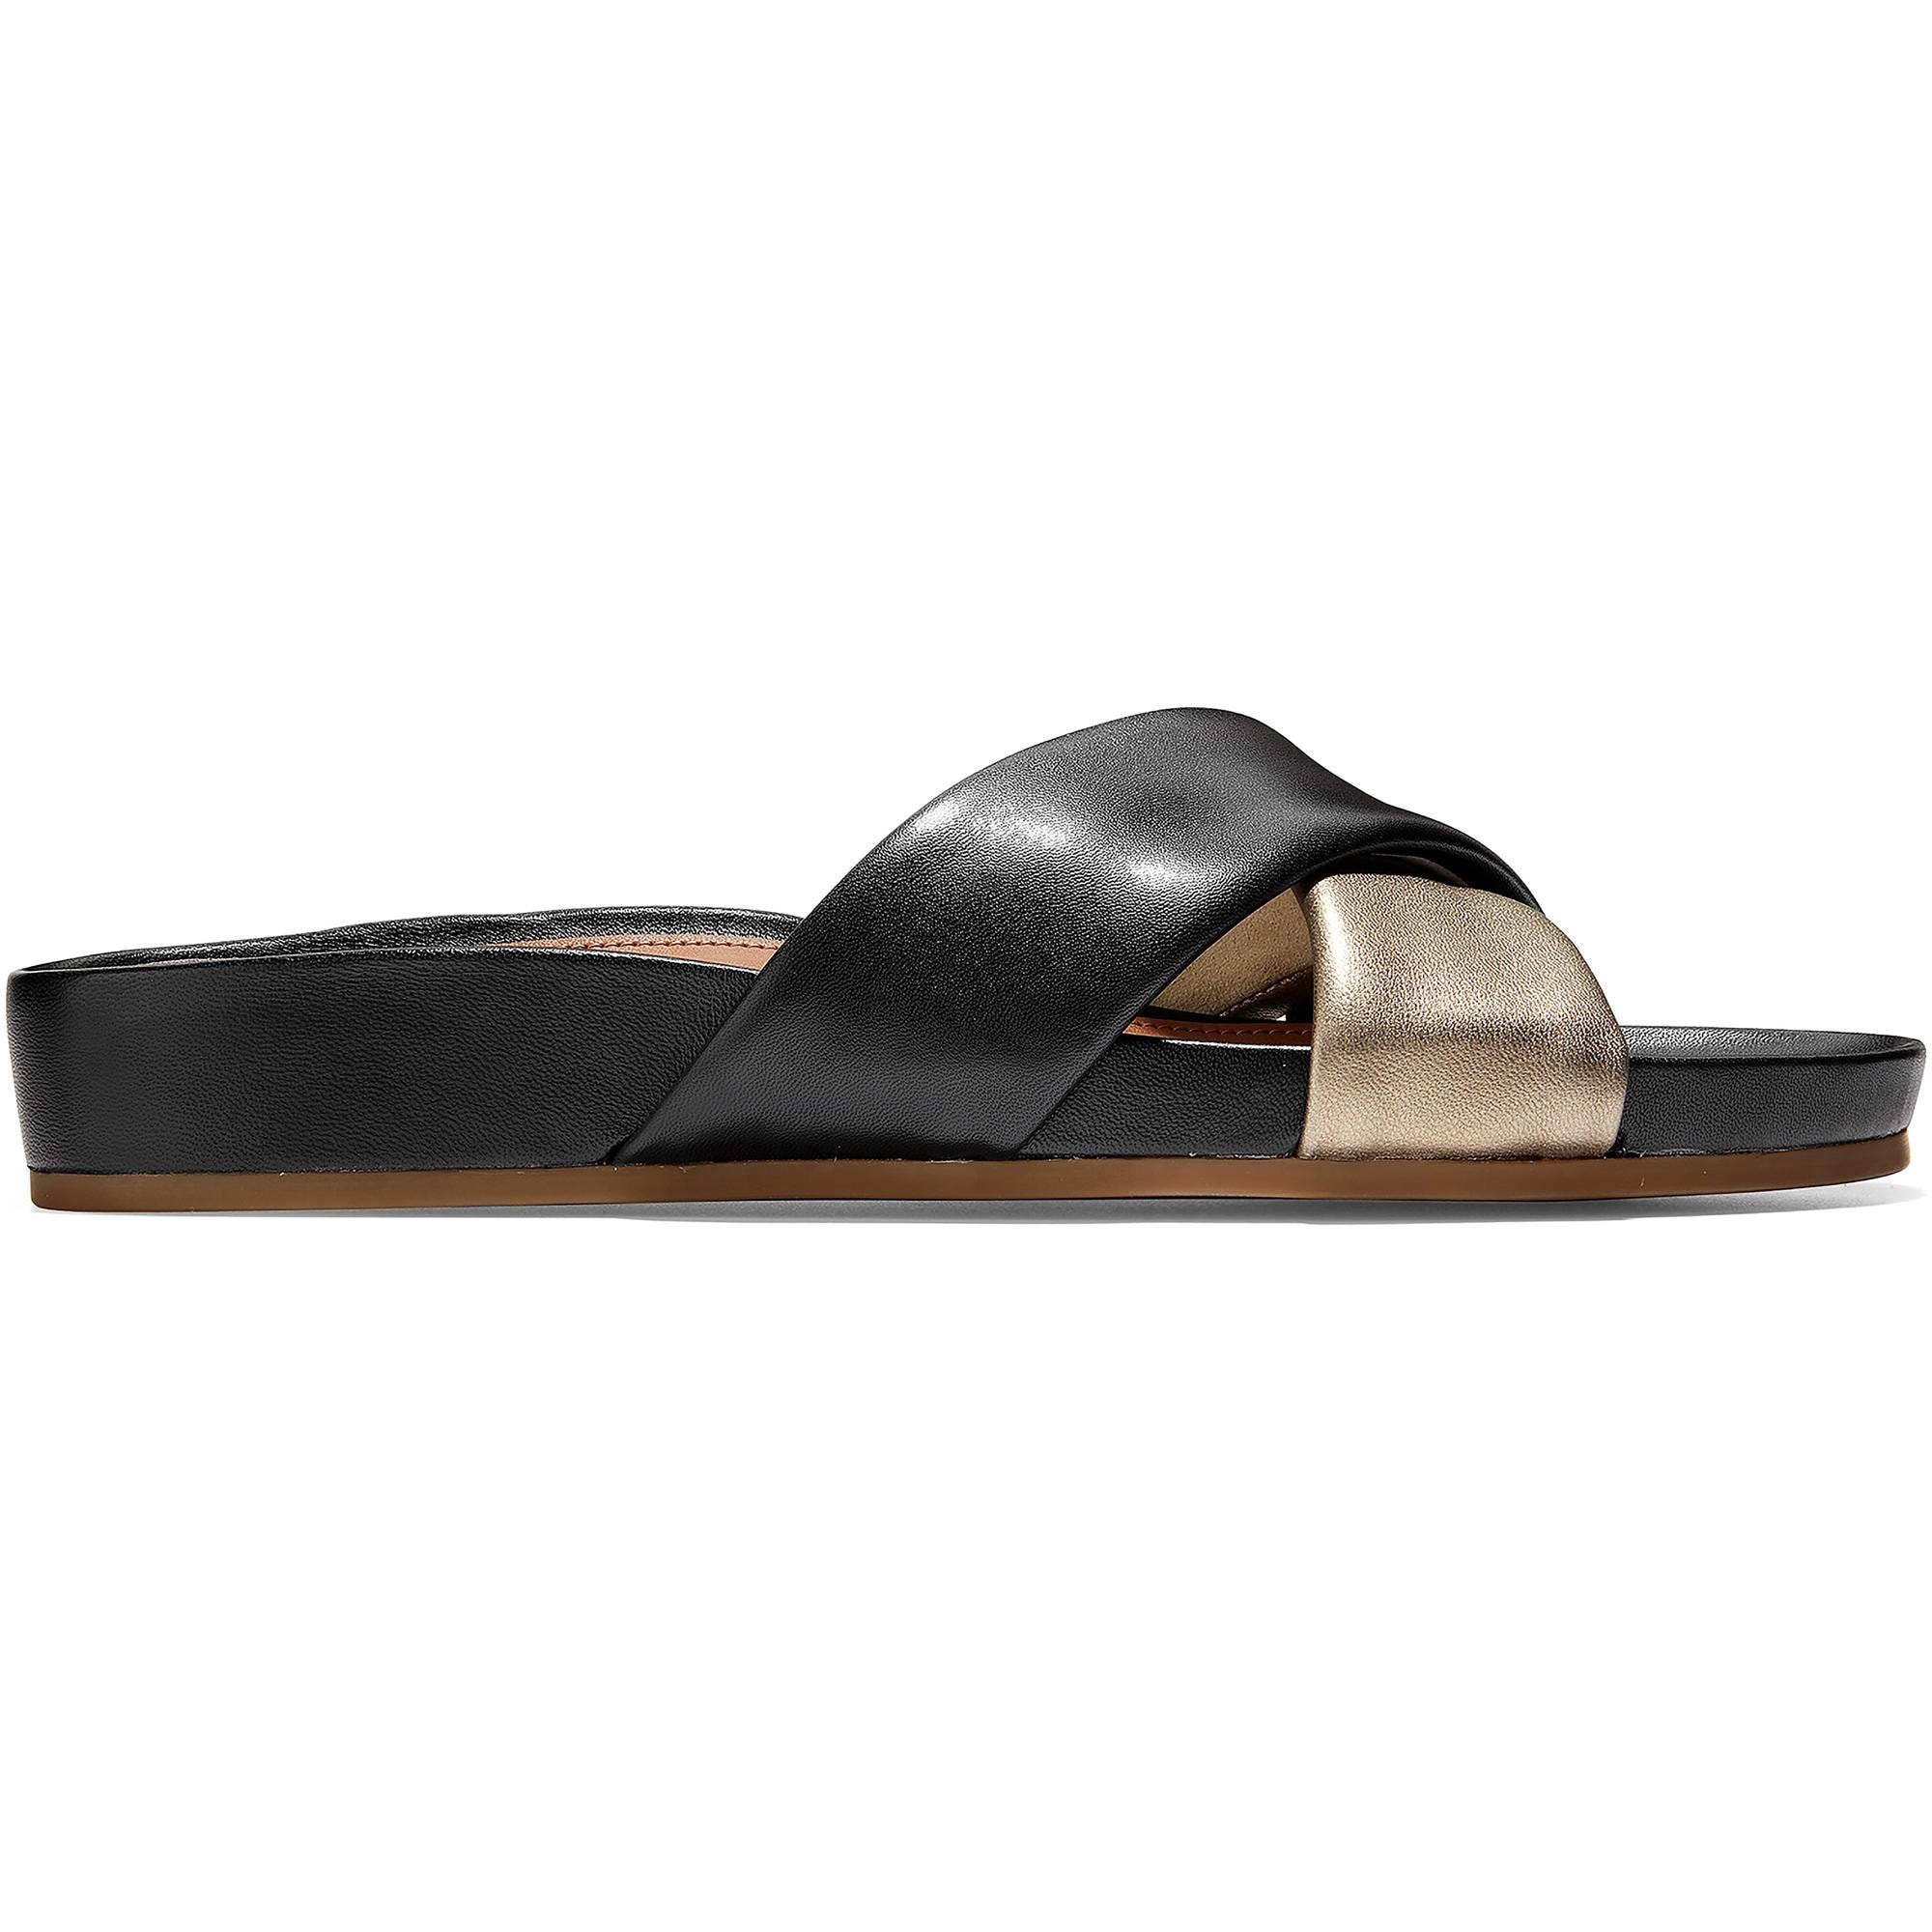 metallic slide sandals